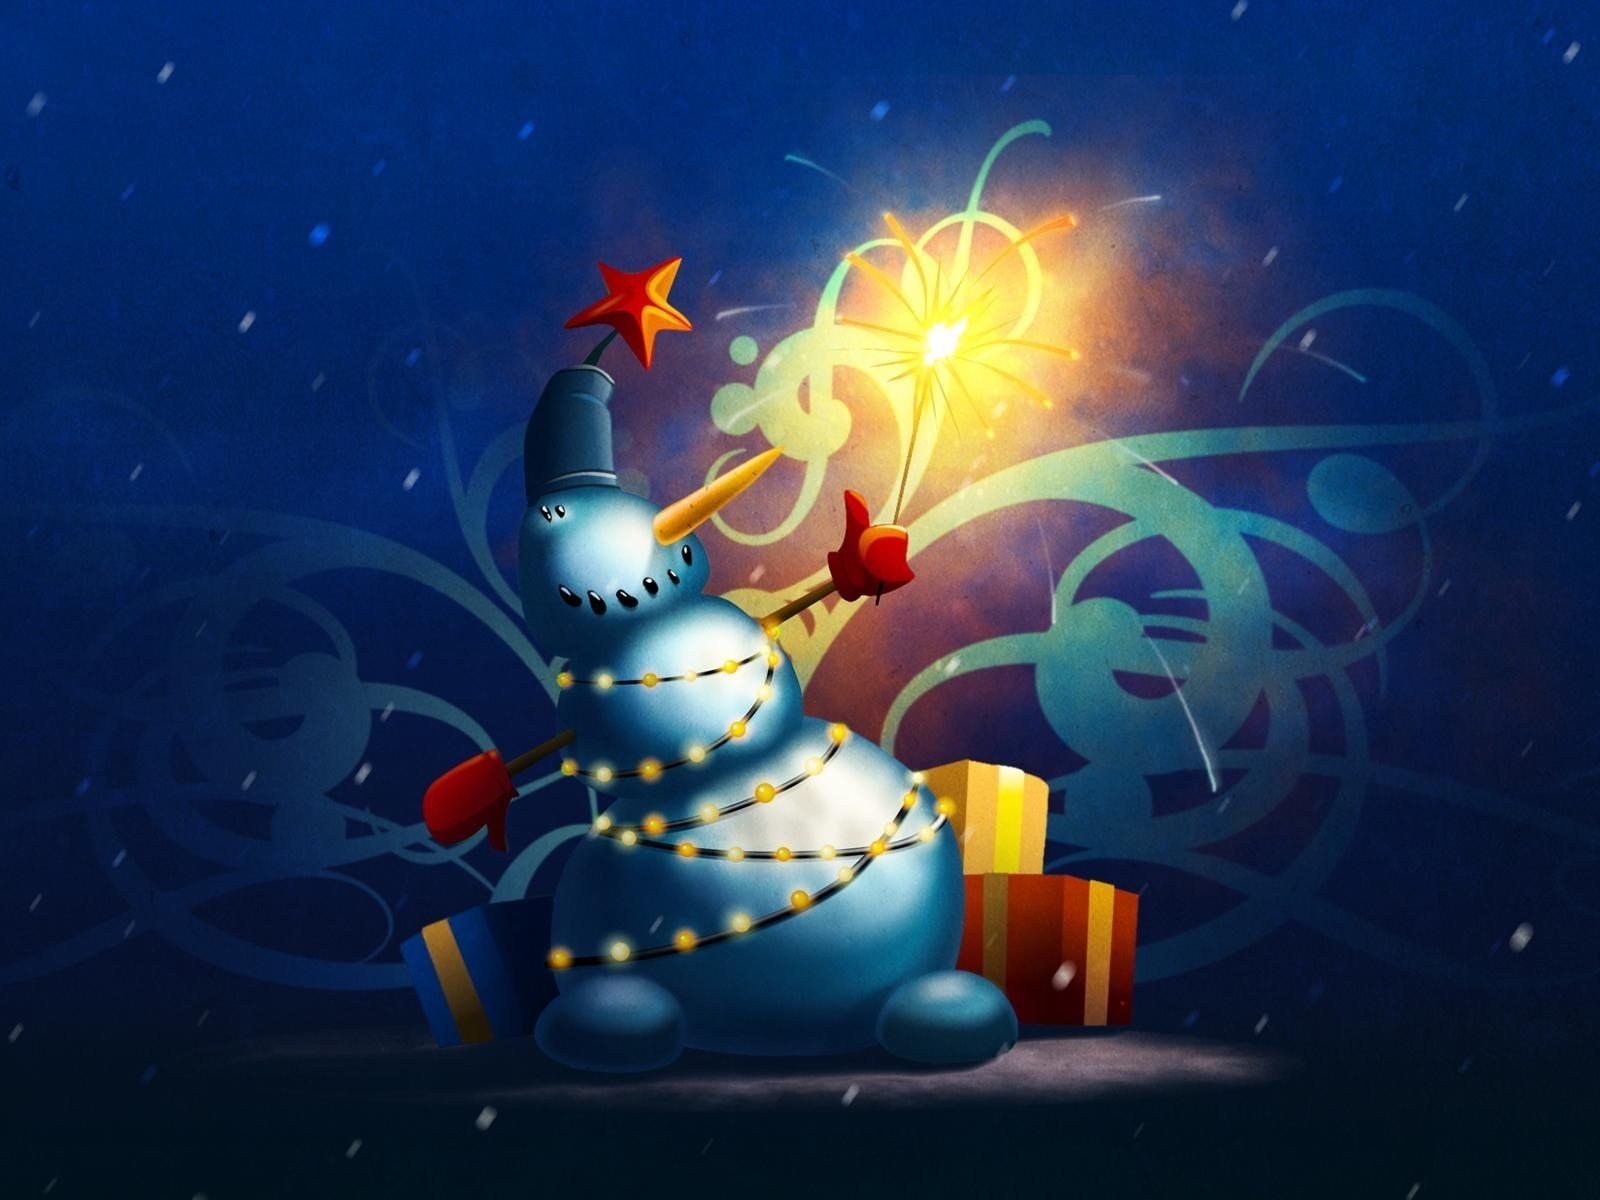 Скачать картинку Праздники, Рождество (Christmas Xmas), Новый Год (New Year), Рисунки в телефон бесплатно.